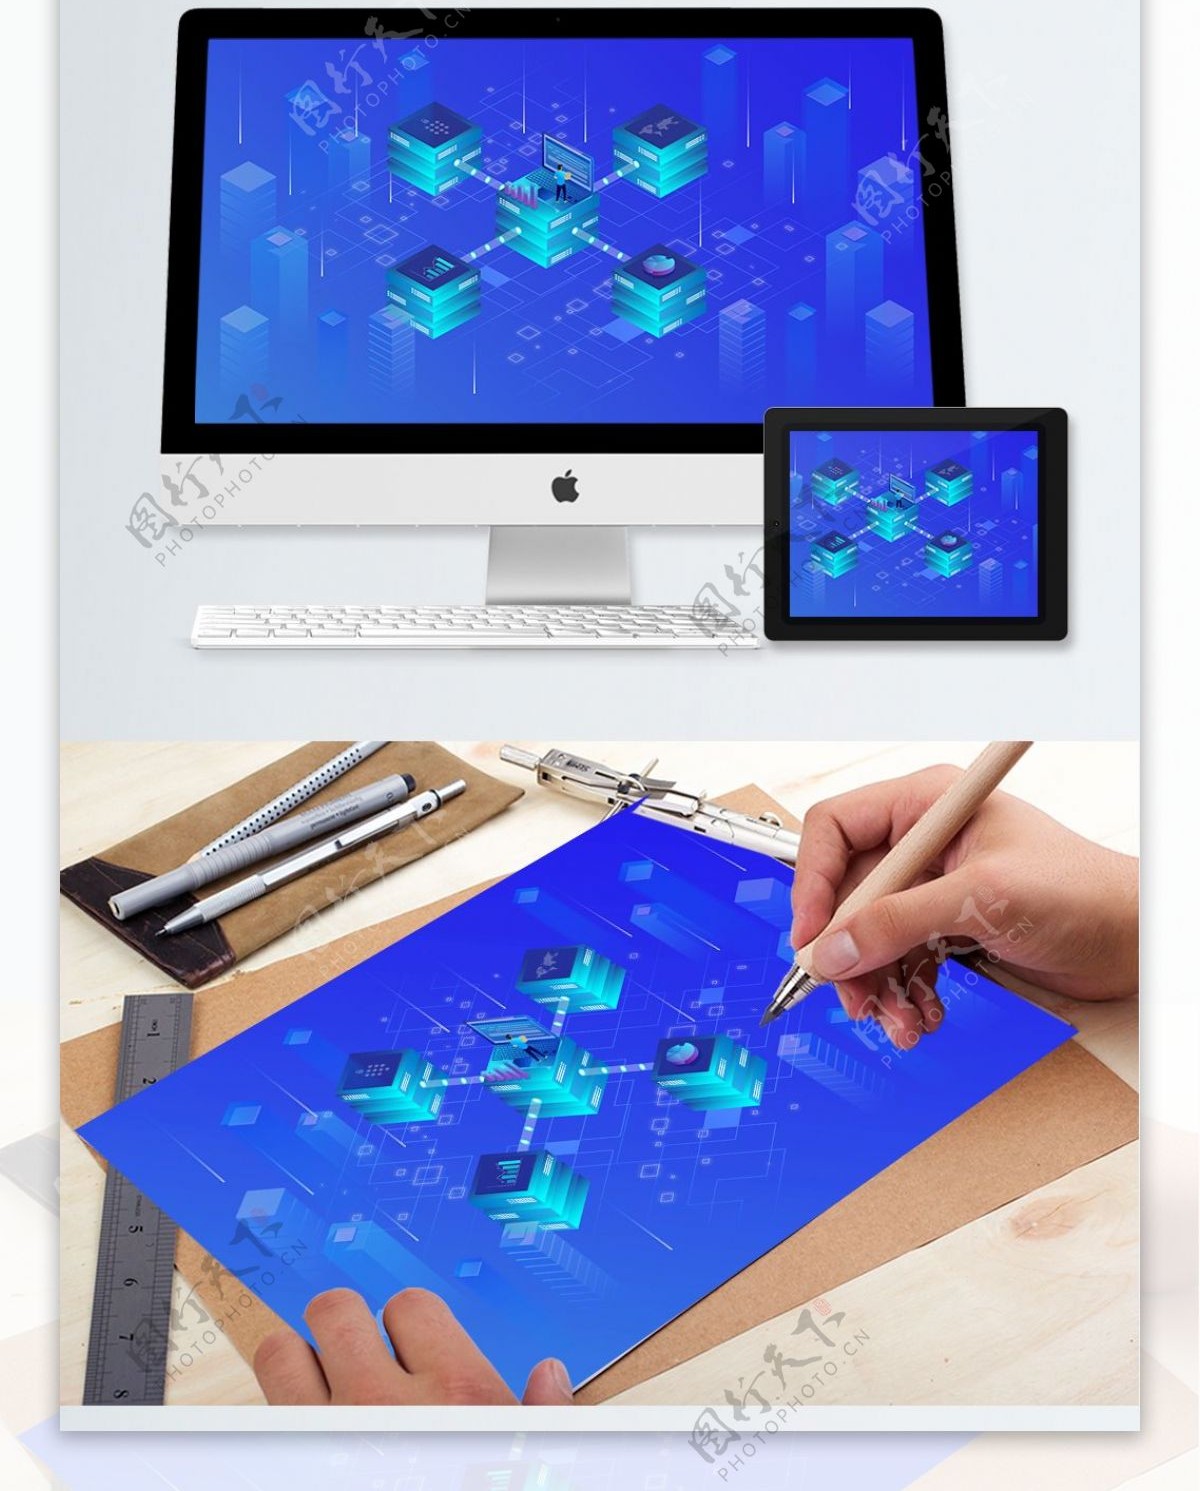 小清新蓝色科技未来2.5D插画